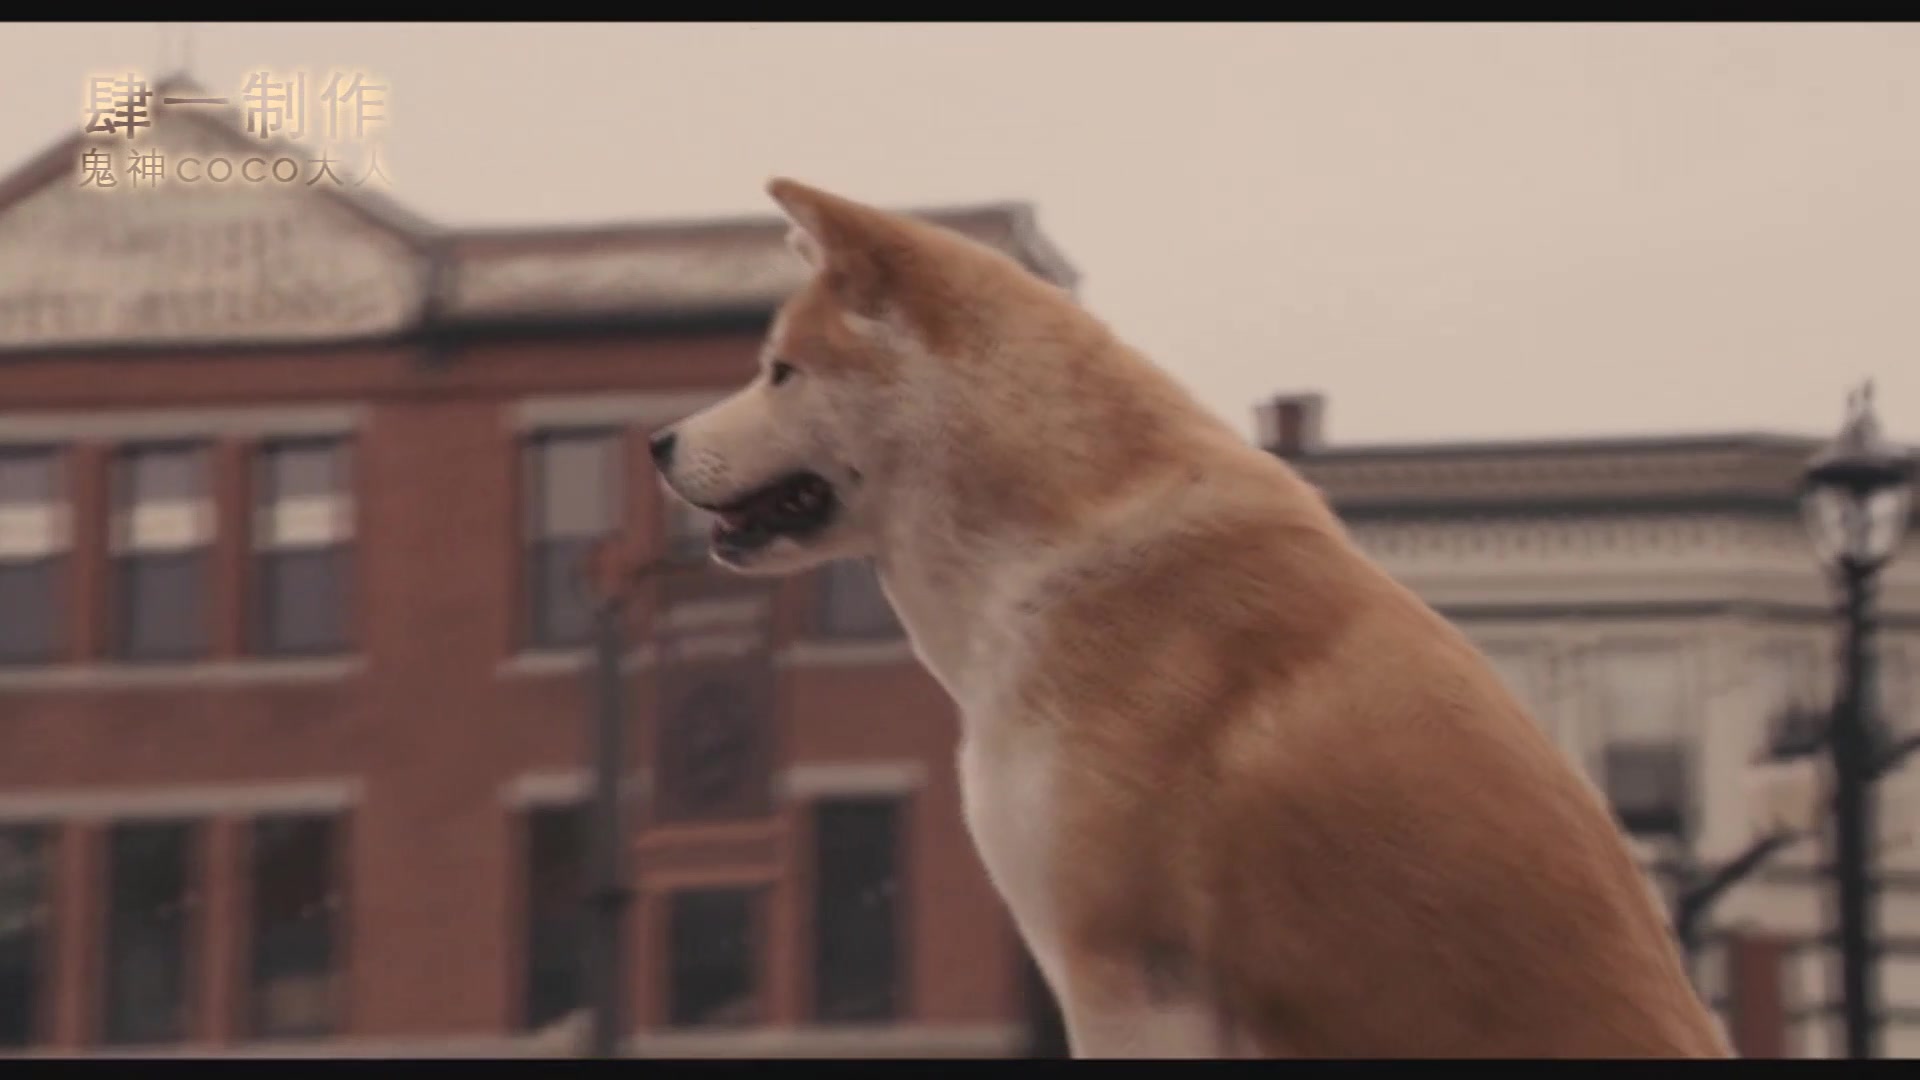 日本电影忠犬八公物语图片